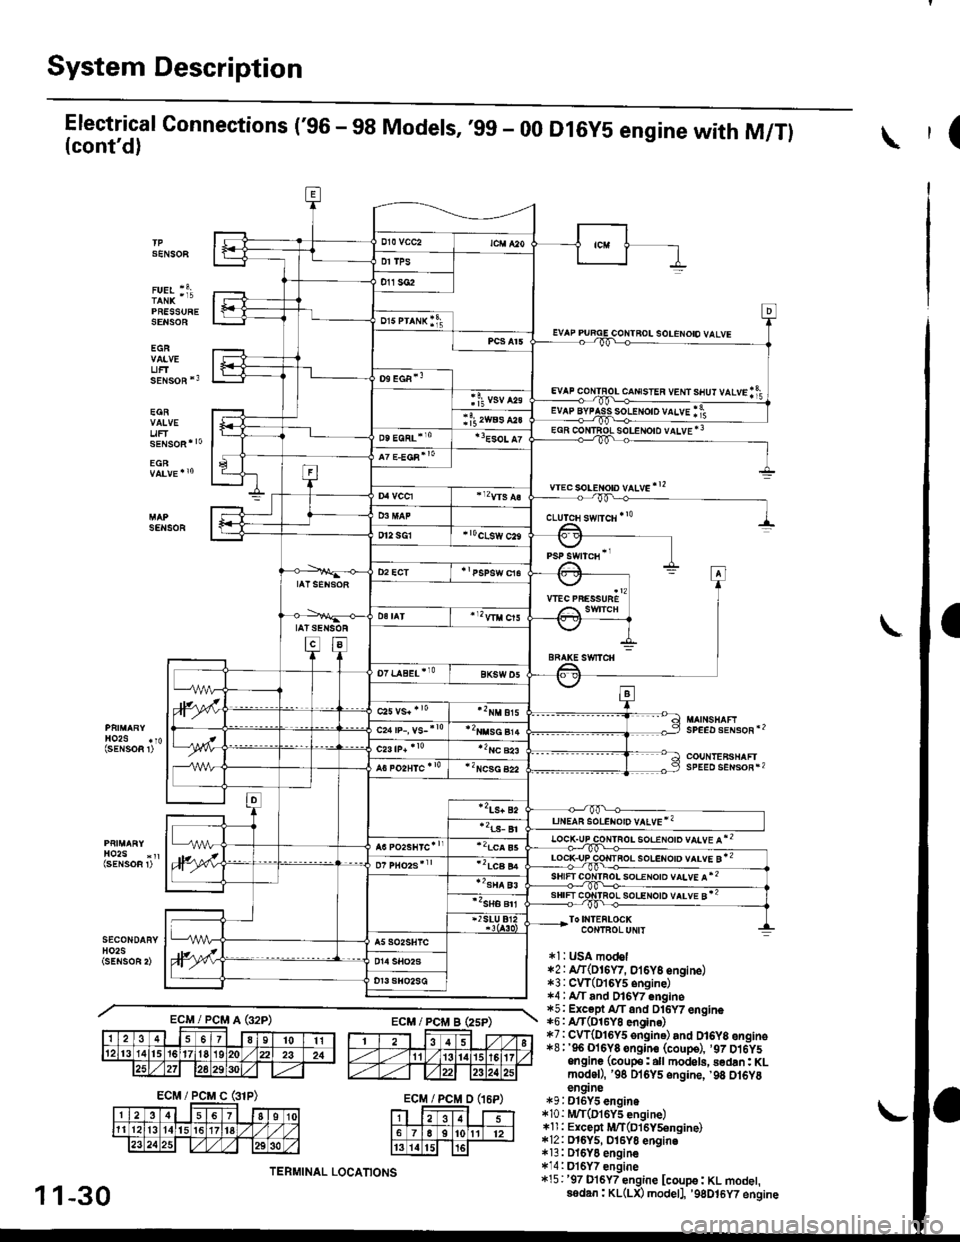 HONDA CIVIC 1998 6.G User Guide System Description
Electrical Connections (96 - 98 Models, ,99 - 00(contd)
PRESSURESENSOE
EGR
UFTsENsoR *3
EGR
uF
D16Y5 engine with M/Tl(
SENSOF
solENoto vALvE *3
wec soLeton vltve!2
SENSOR
SPEED s